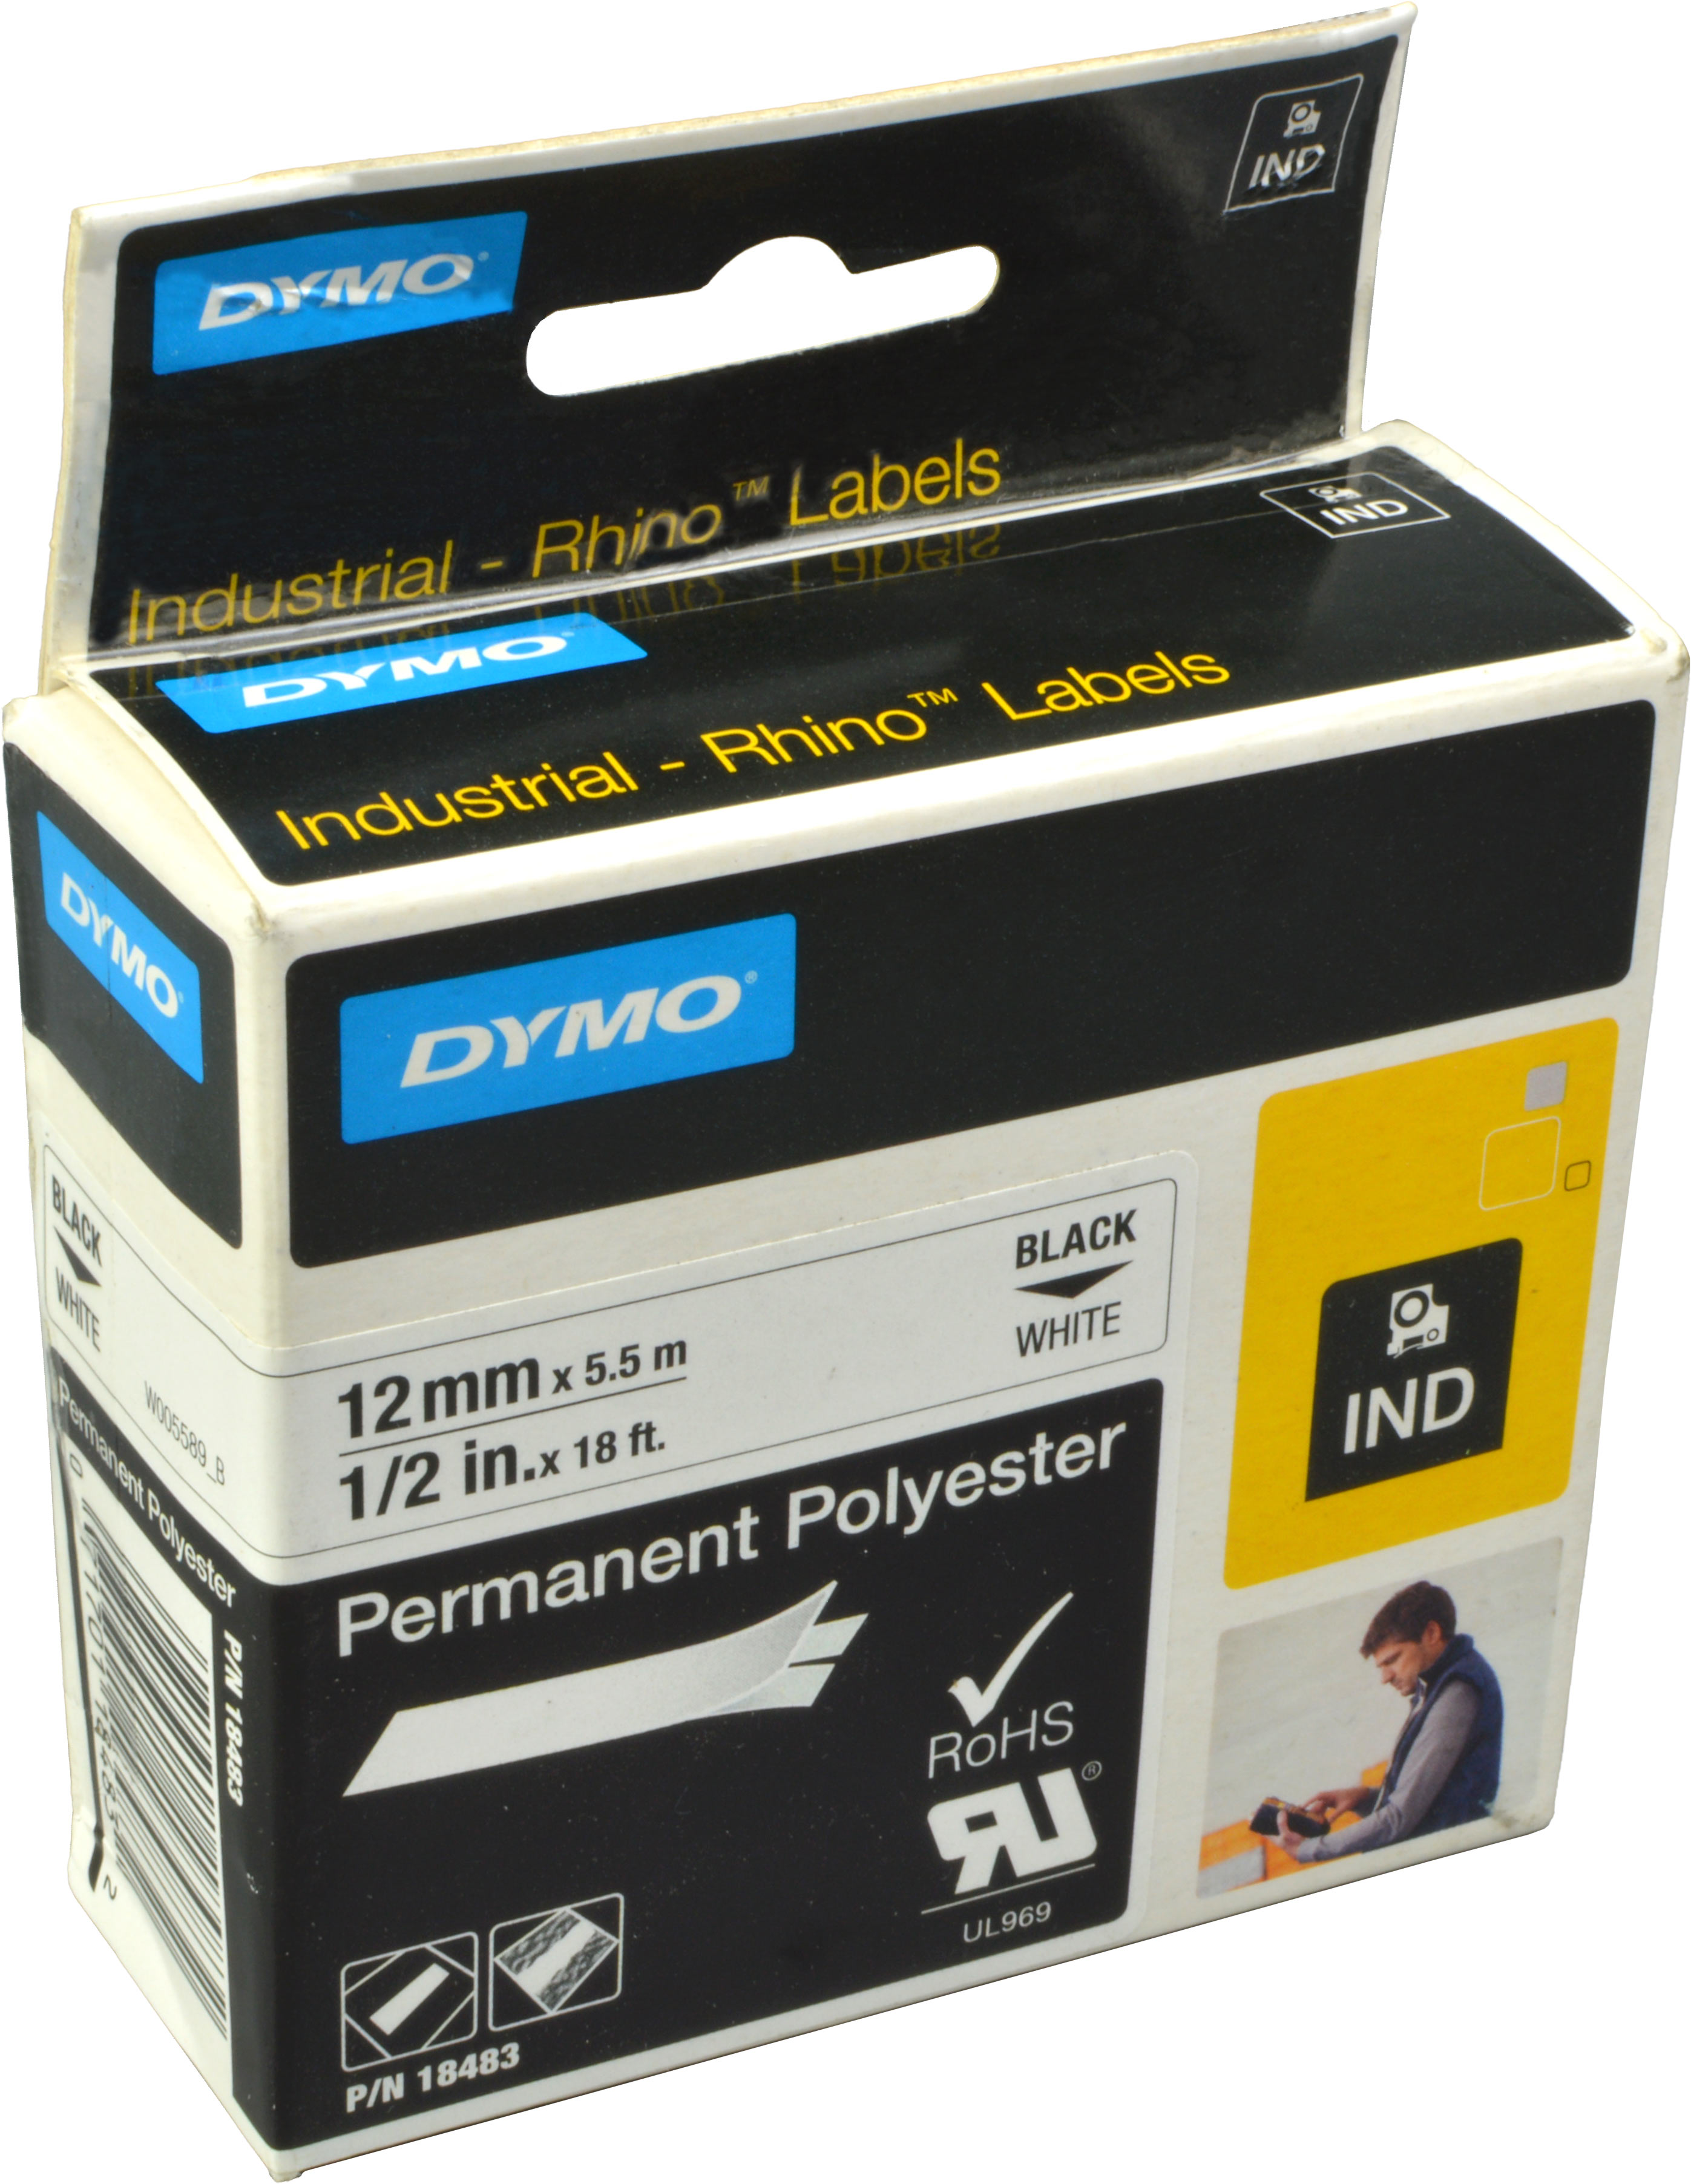 Dymo Originalband 18483  schwarz auf weiß  12mm x 5,5m  Polyester